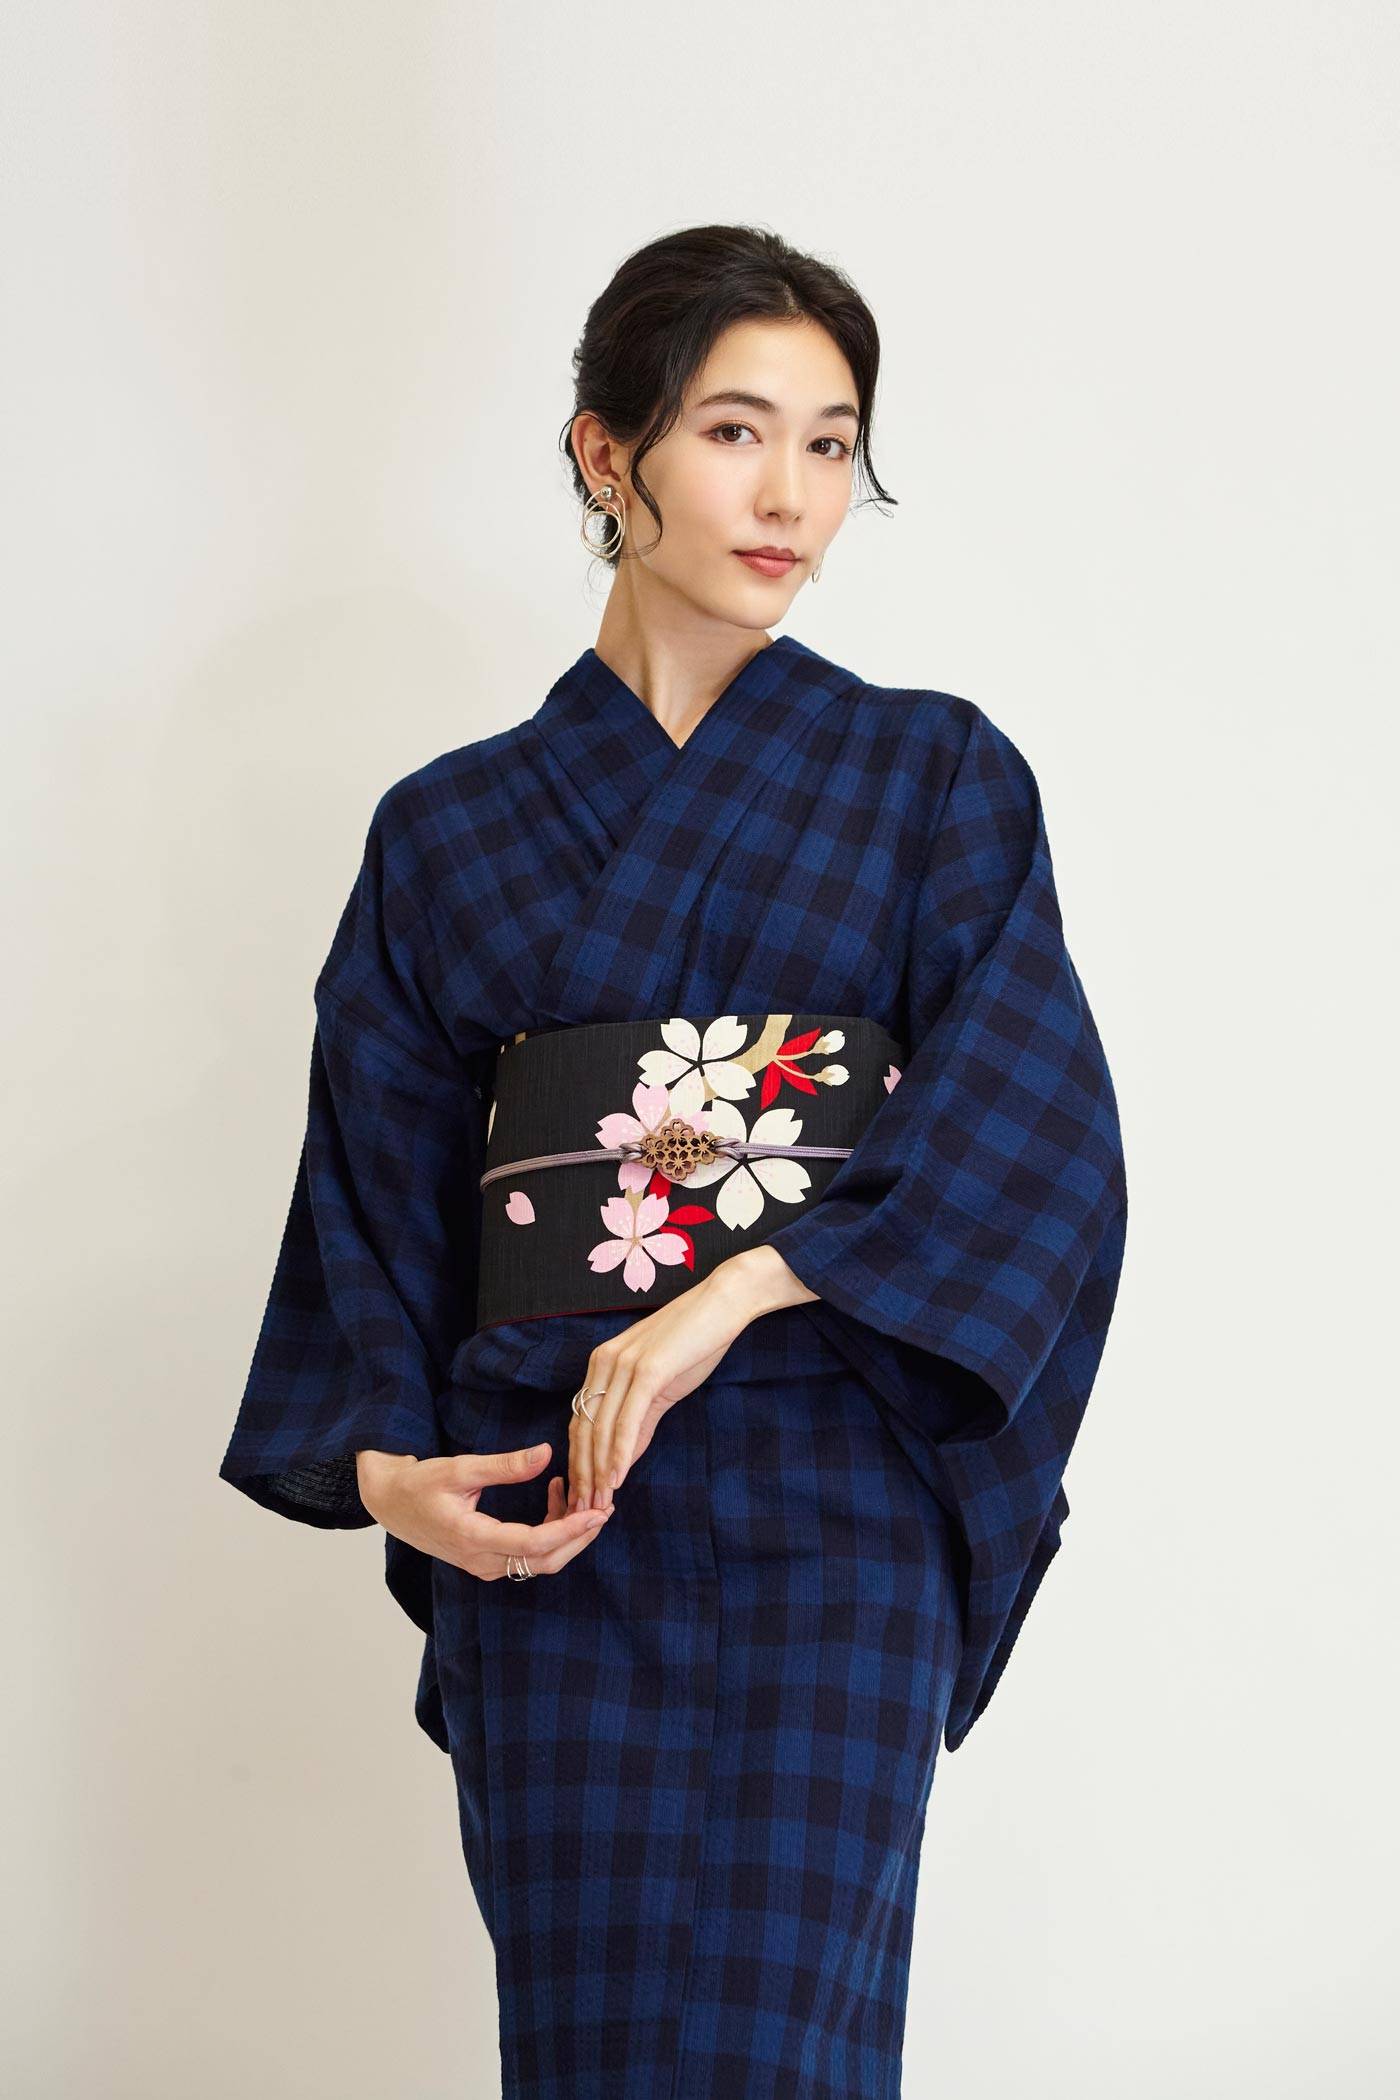 Yukata Kimono: What's the Difference? – Japan Store